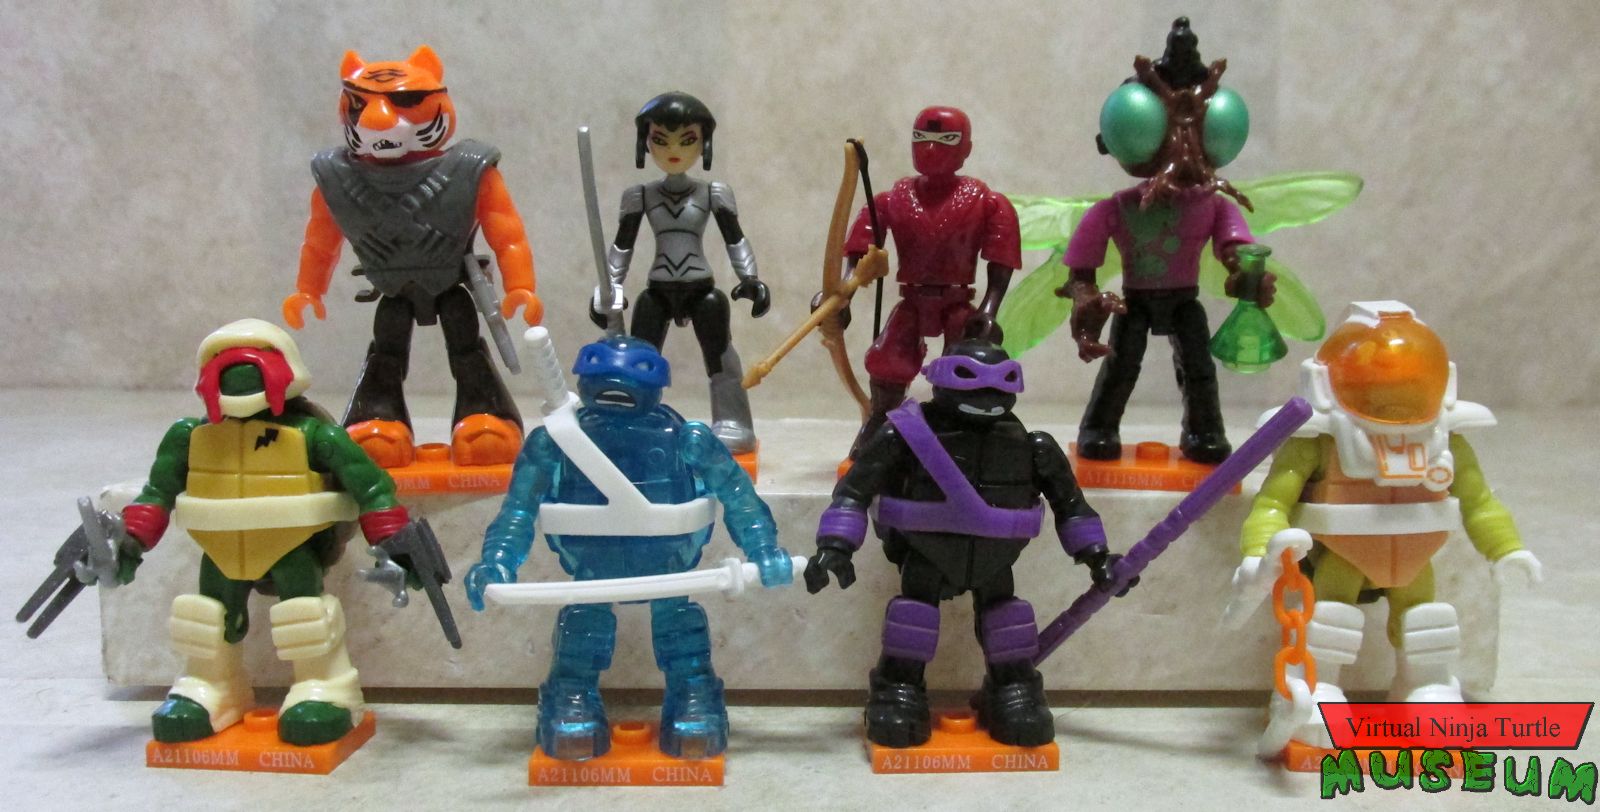 Lot of 10 Mega Construx Teenage Mutant Ninja Turtles Series 6 Blind Bags TMNT 